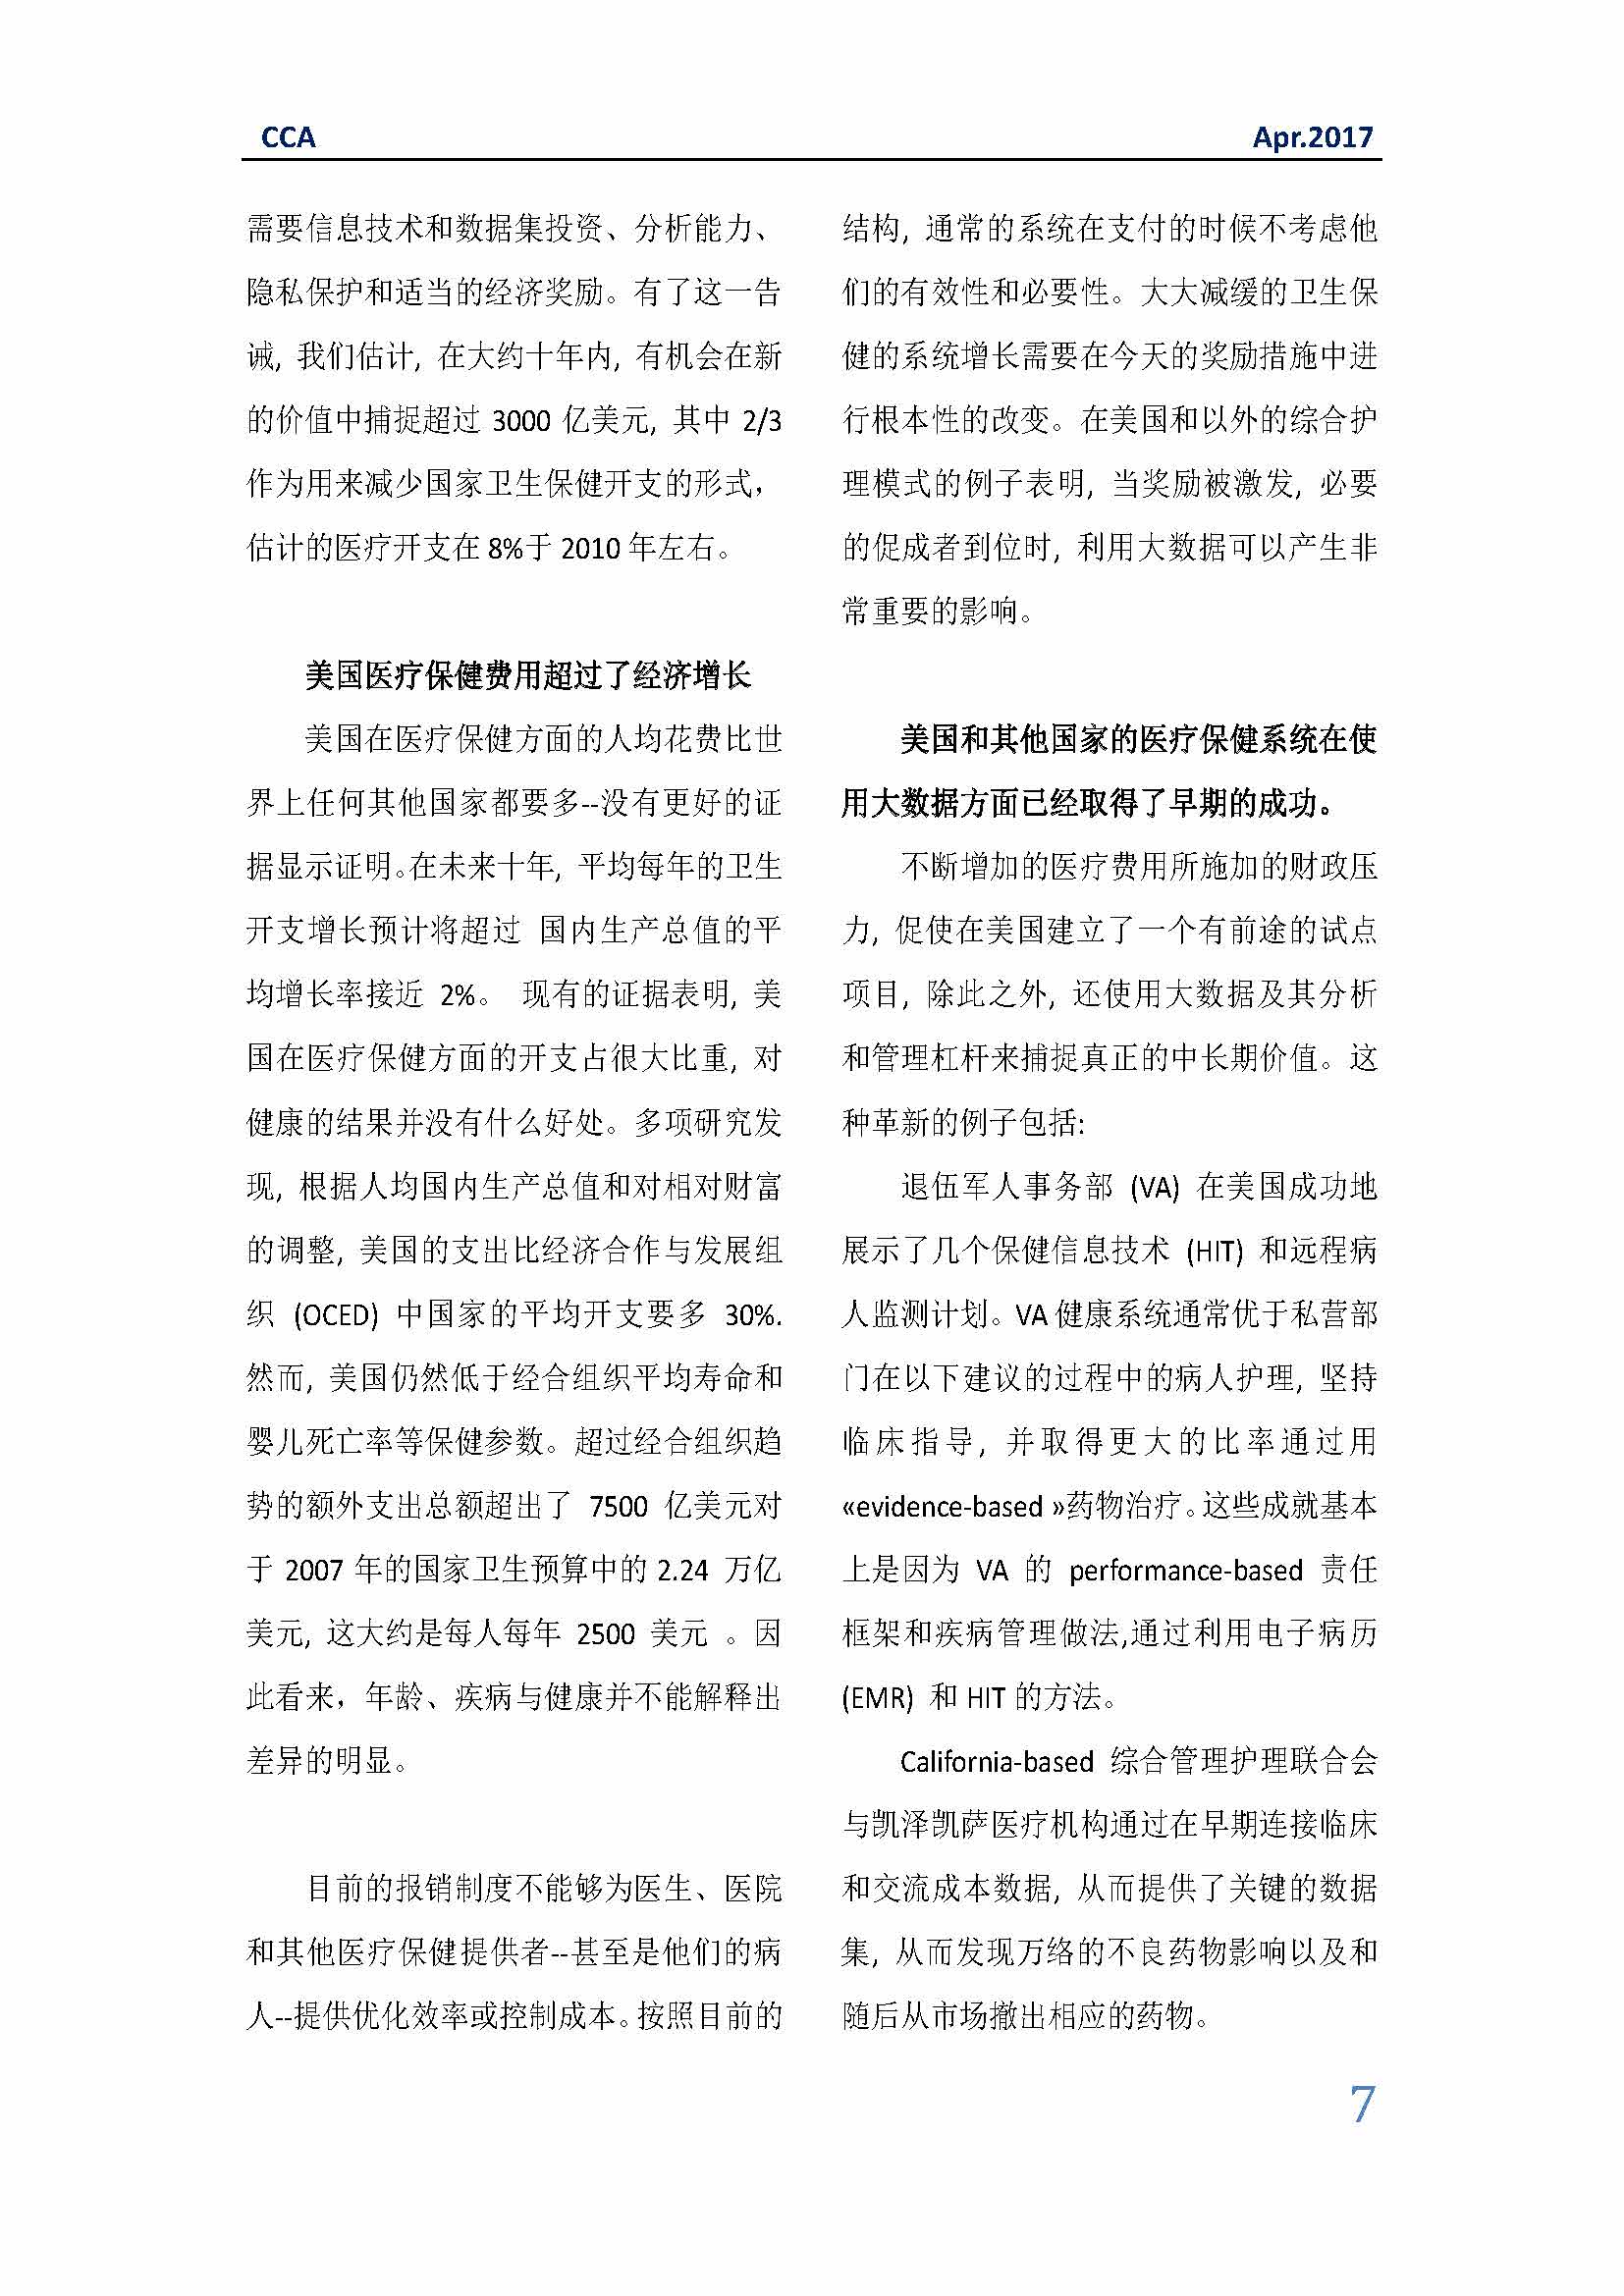 中国科技咨询协会国际快讯（第二十八期）_页面_07.jpg